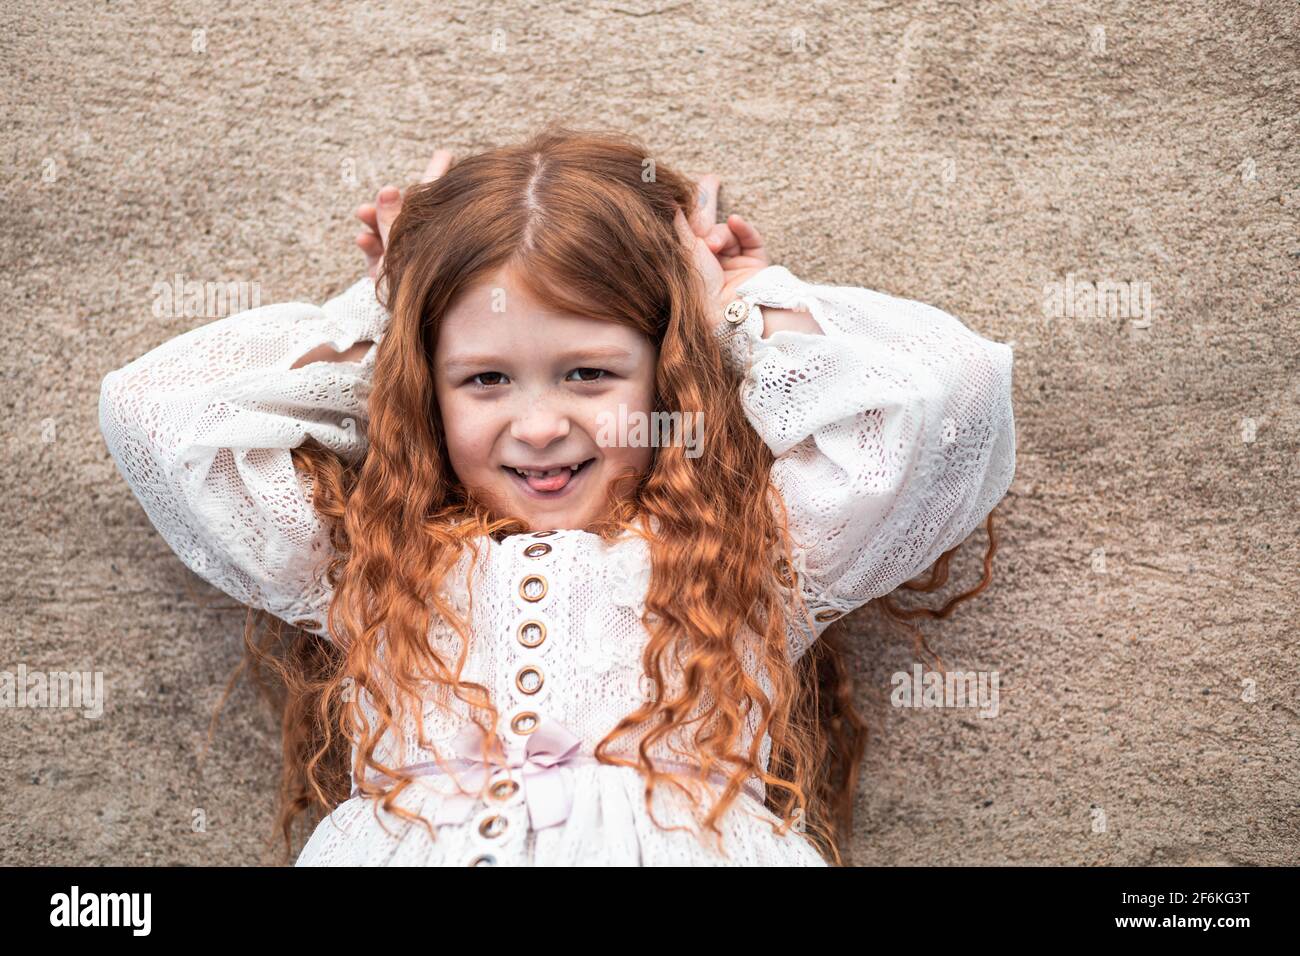 Portrait d'une petite fille au gingembre mignonne qui colle à la langue Banque D'Images